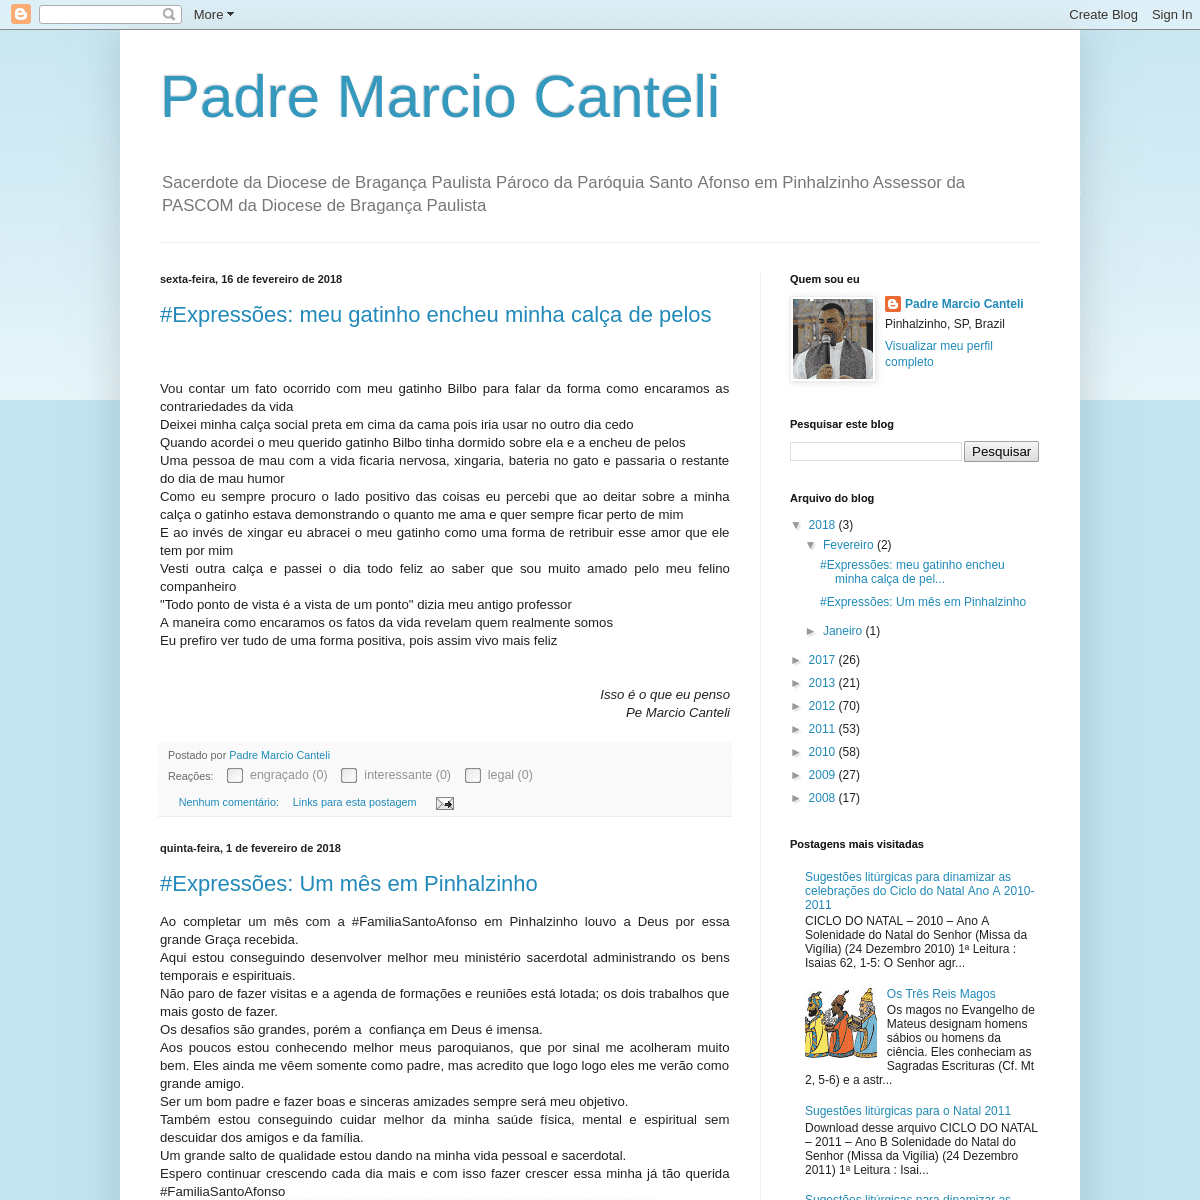 A complete backup of padremarciocanteli.blogspot.com